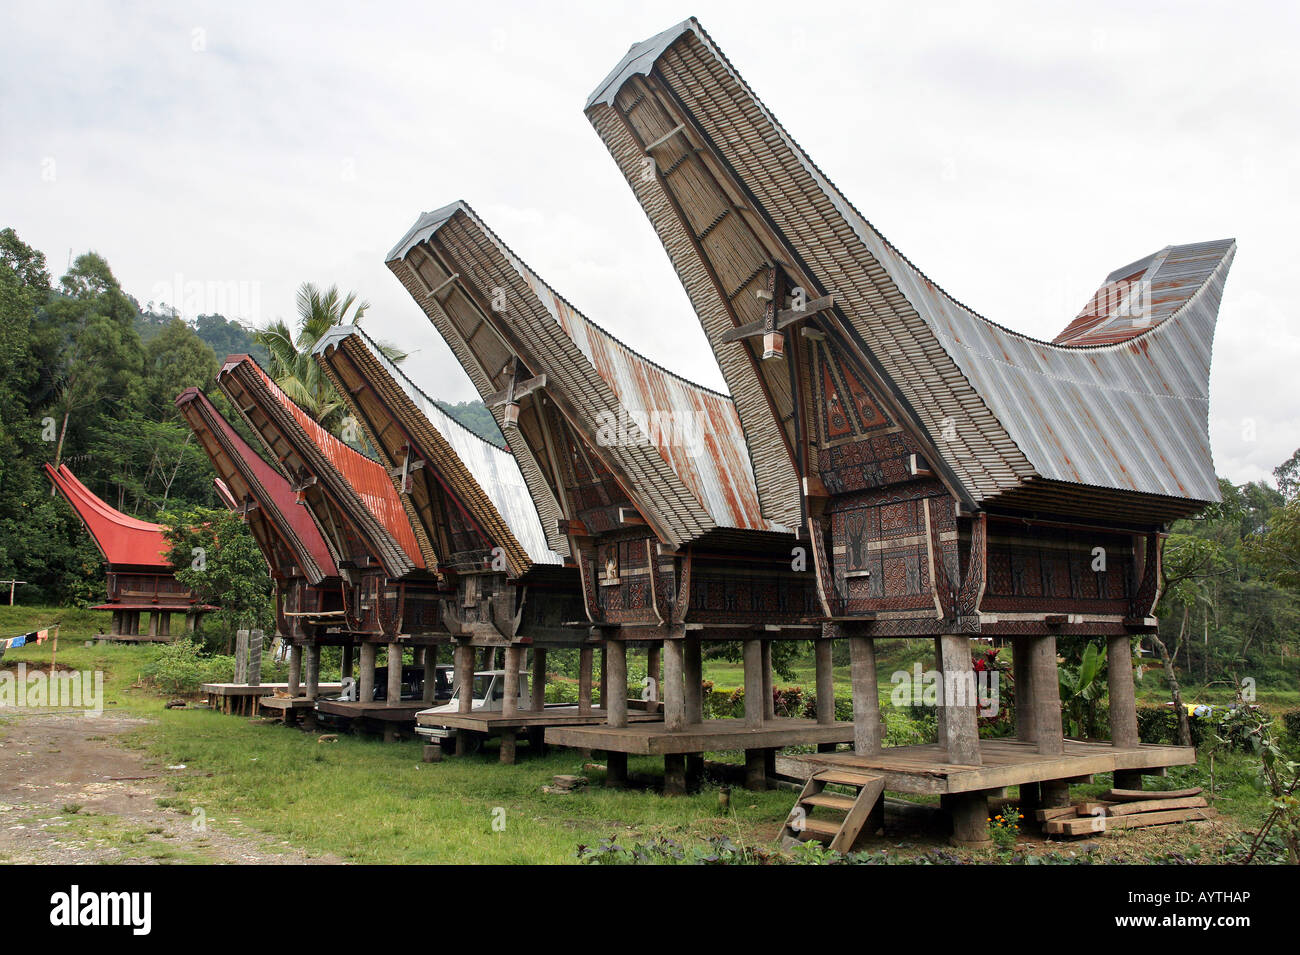 Indonésie : maisons Tongkonan (maisons de stockage du riz). Près de l'île de Sulawesi Rantepao Banque D'Images